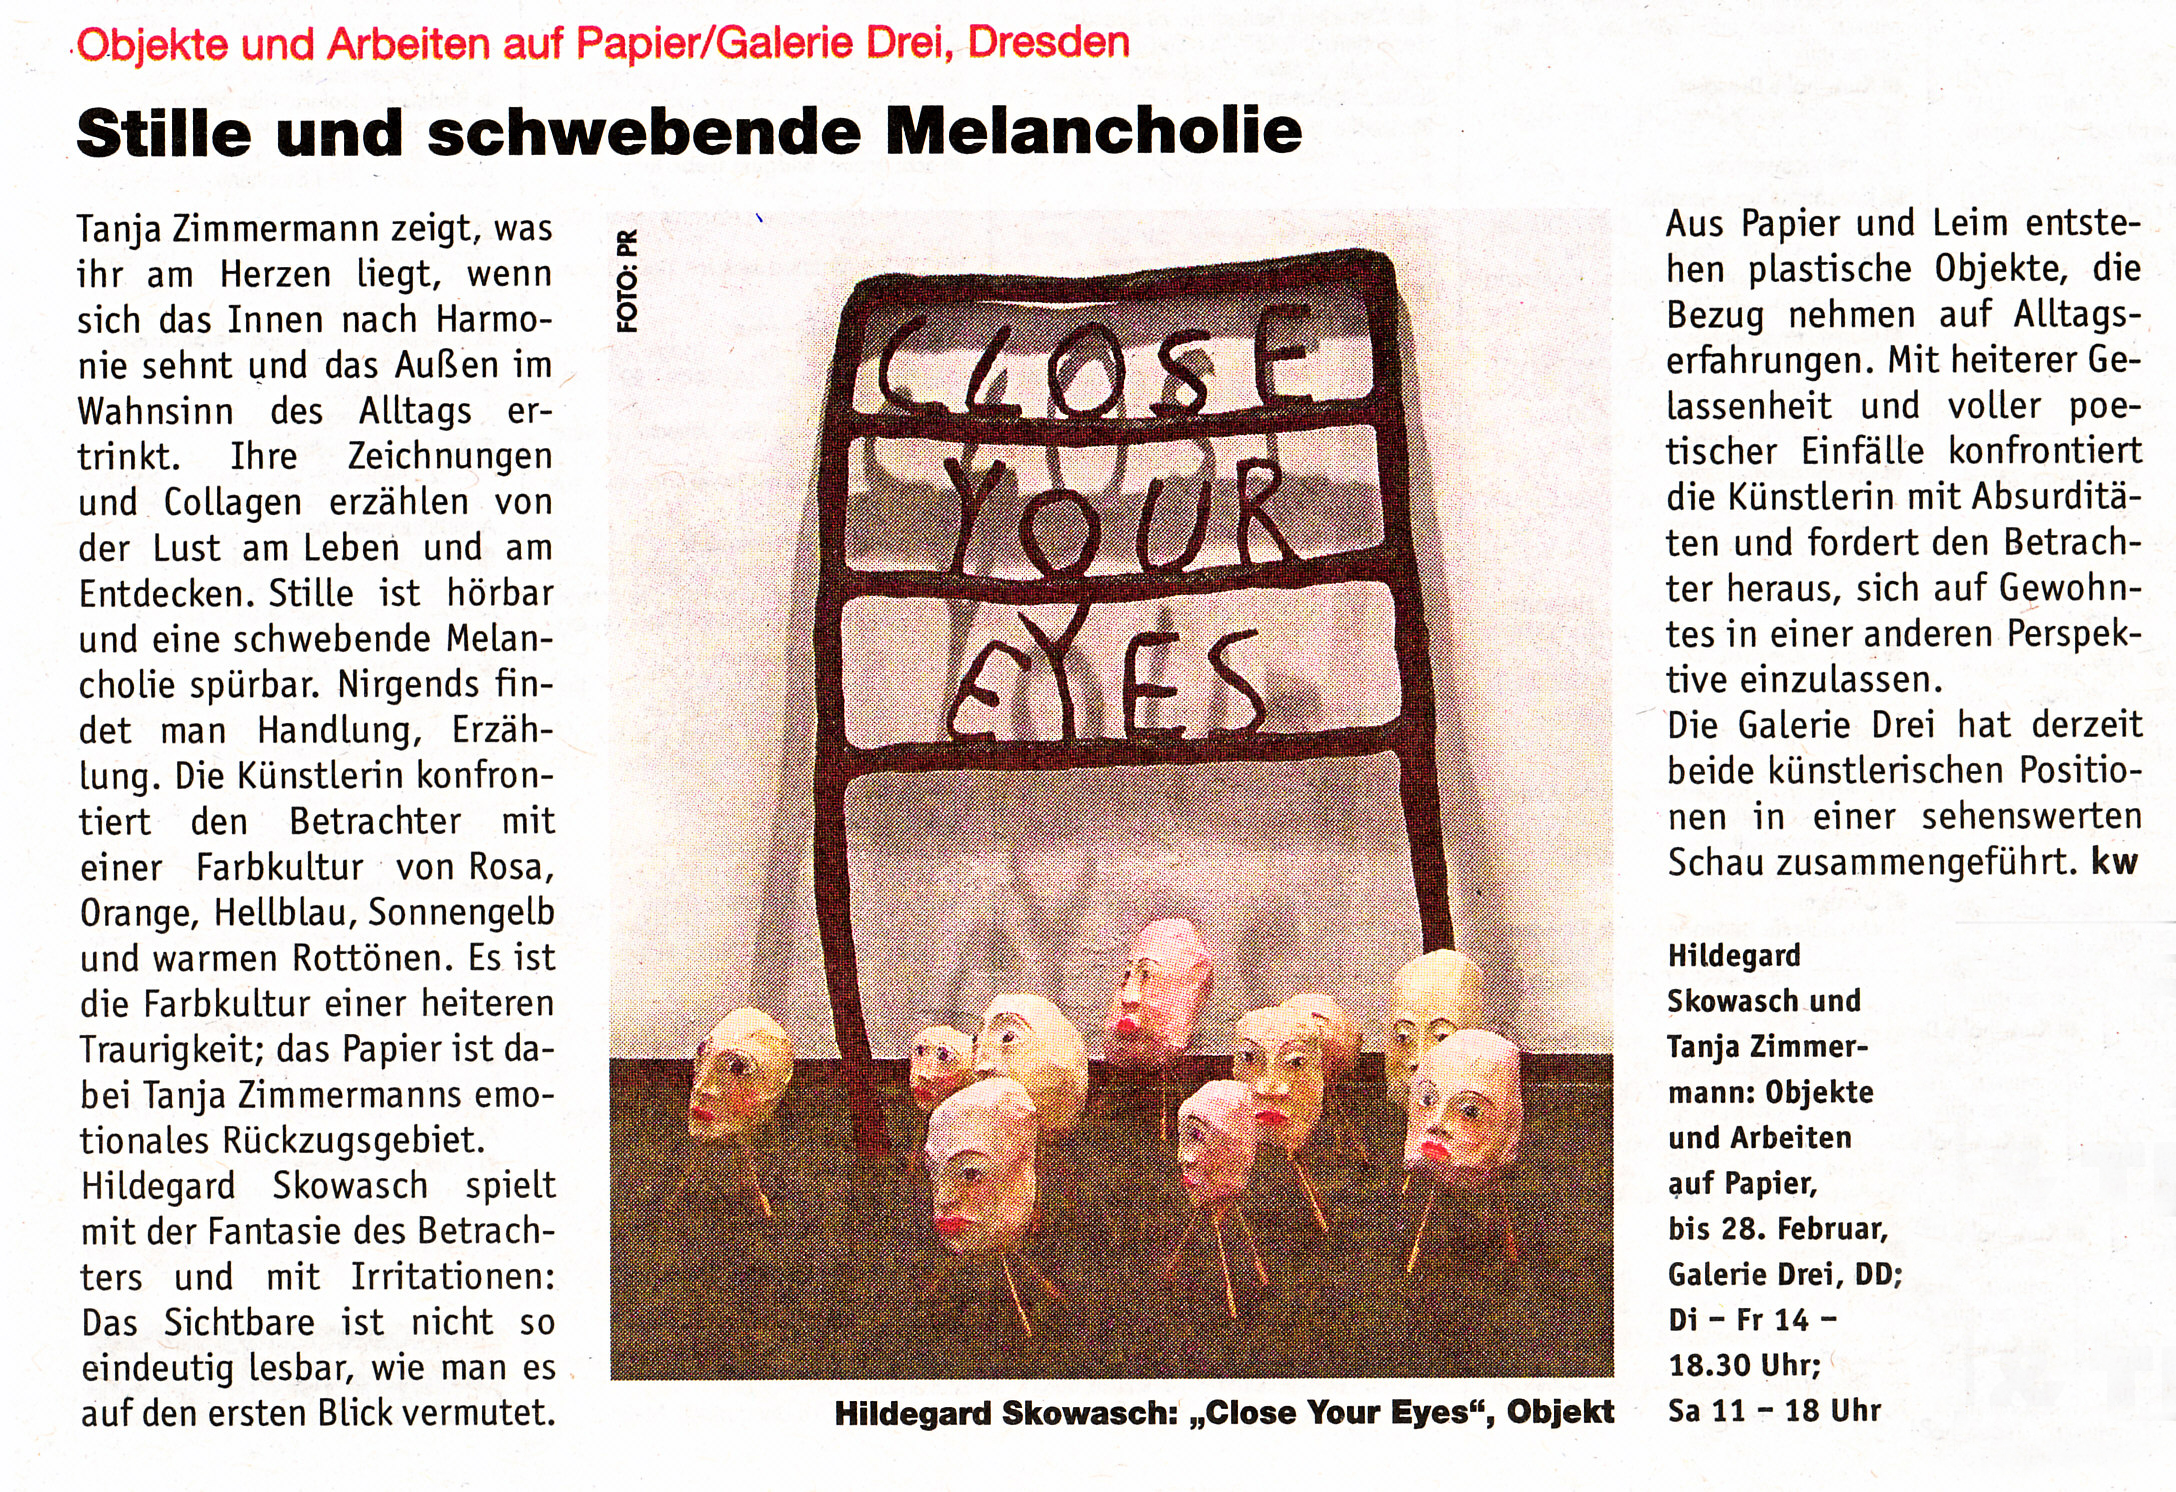 Stille und schwebende Melancholie, Kw, Sächsische Zeitung/Plusz 12.02.2009